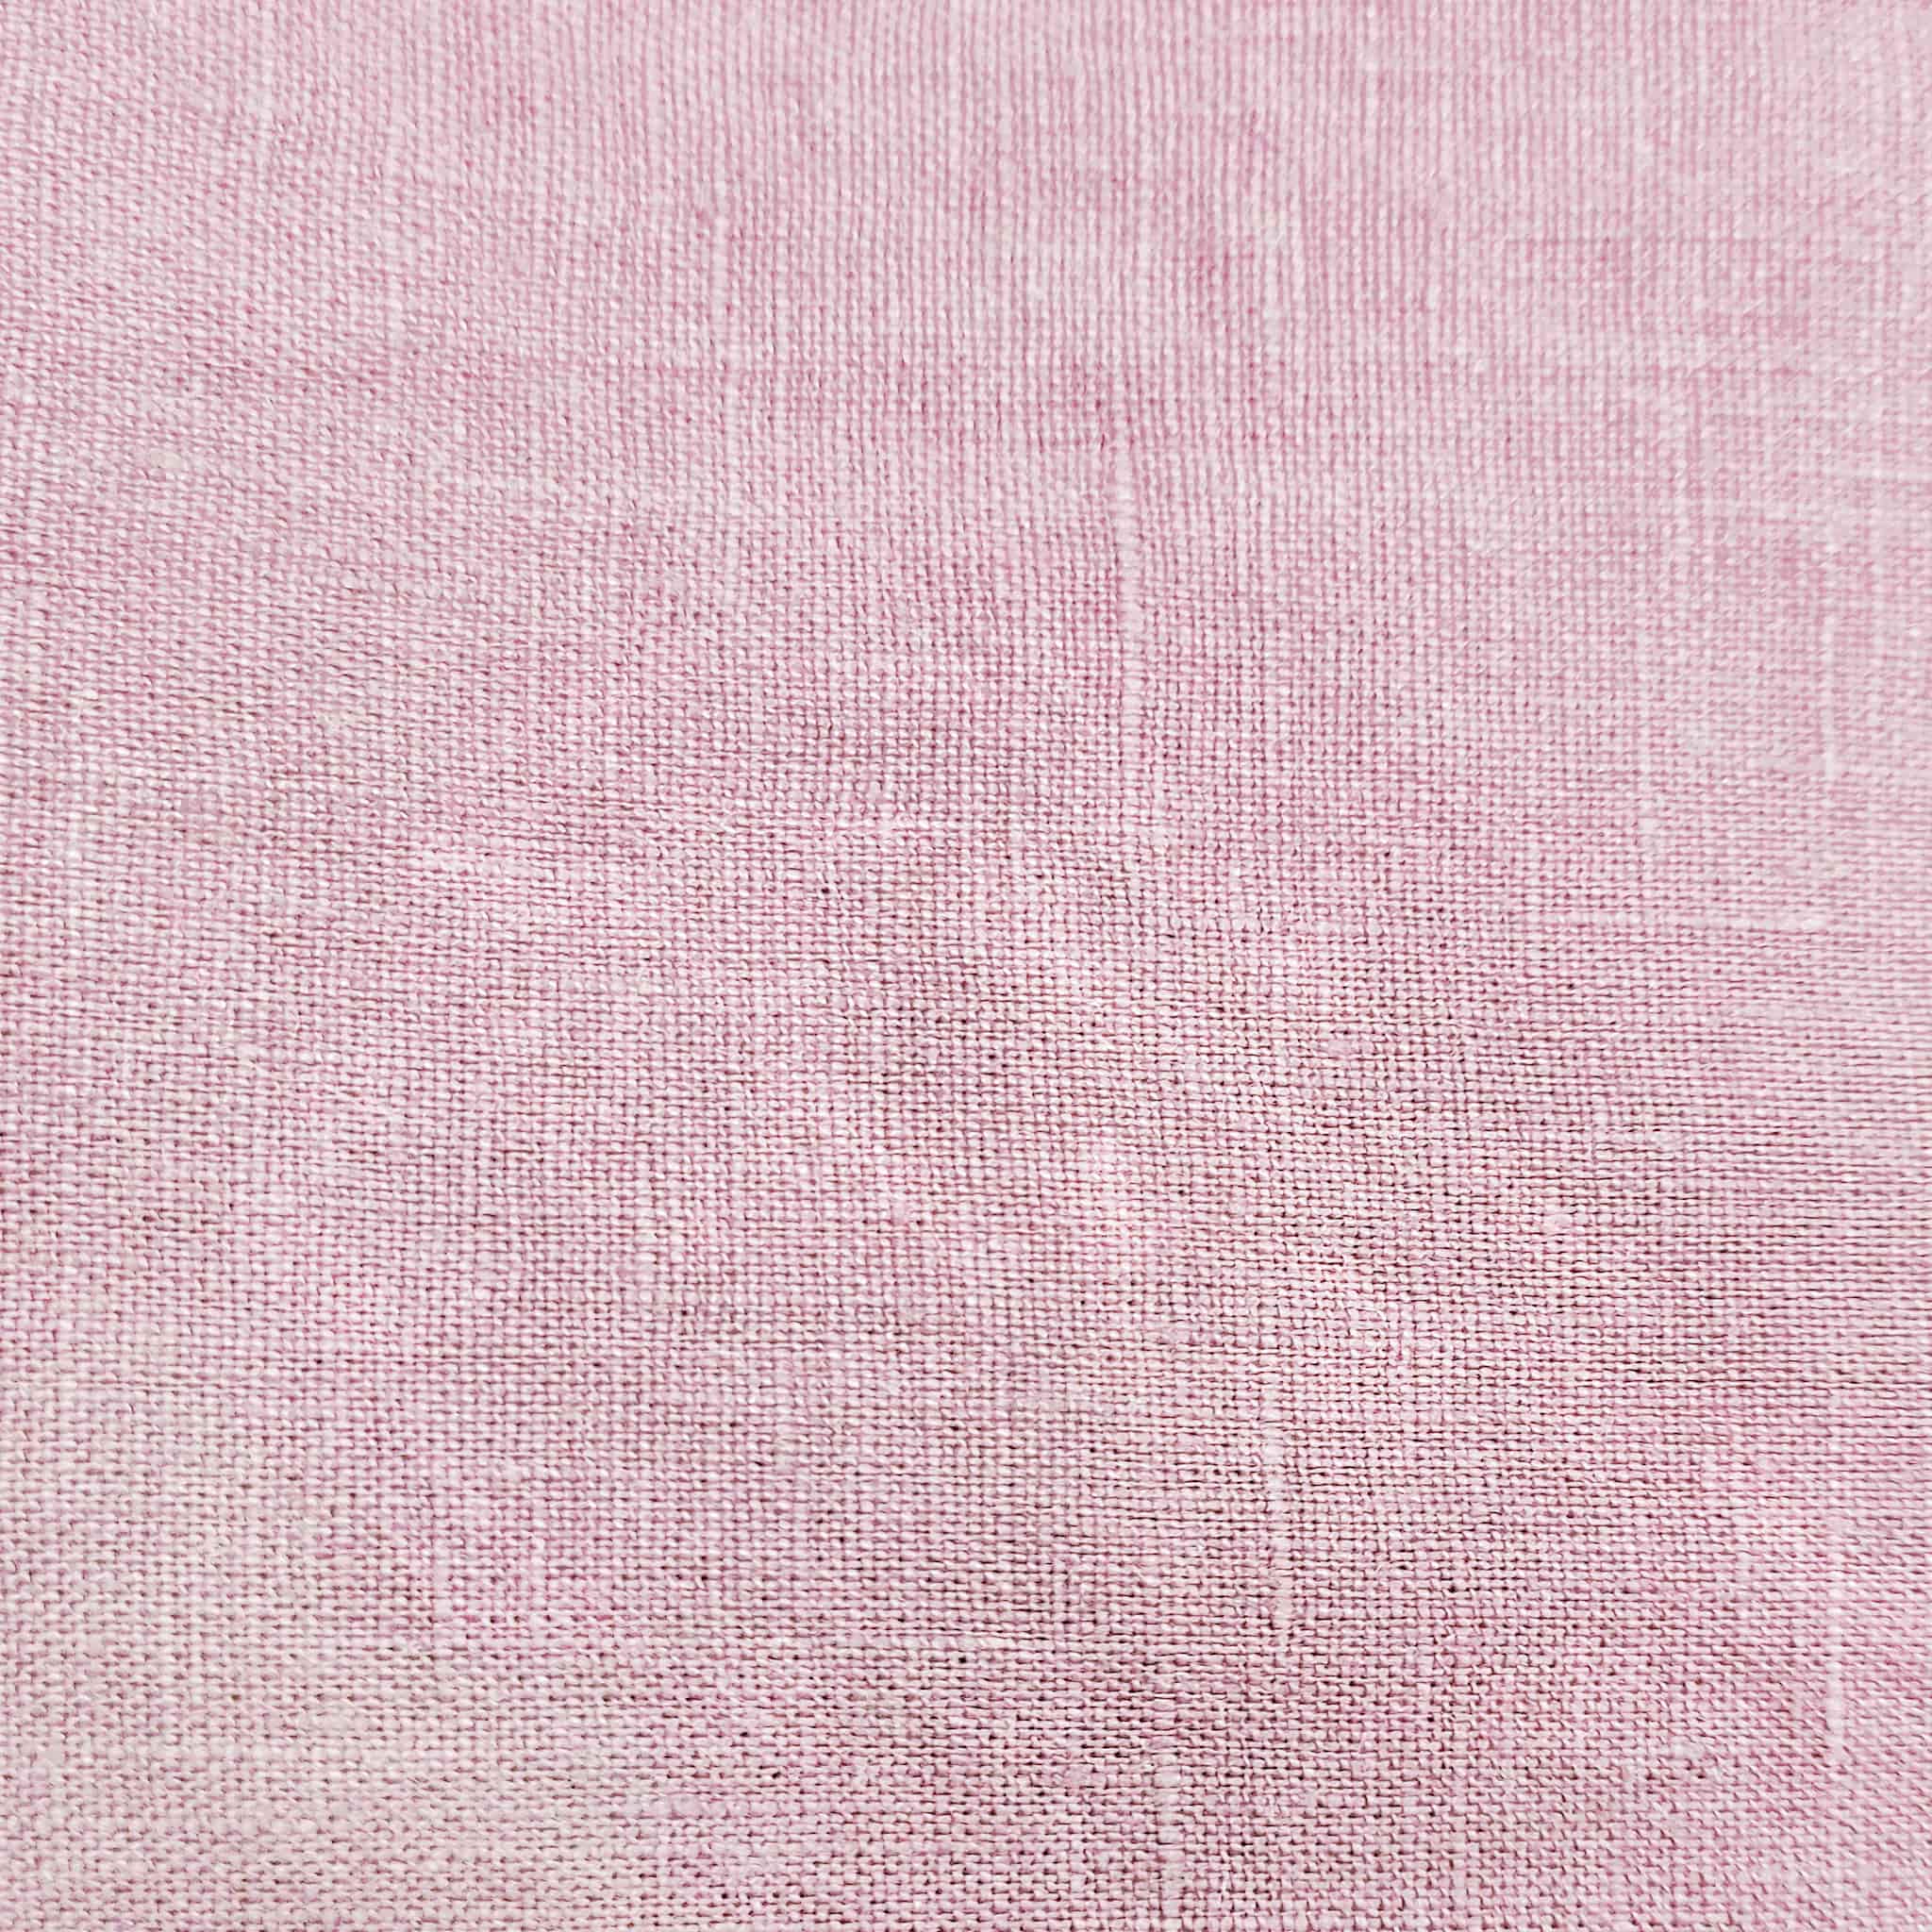 Soft Pink Linen Flat Sheet